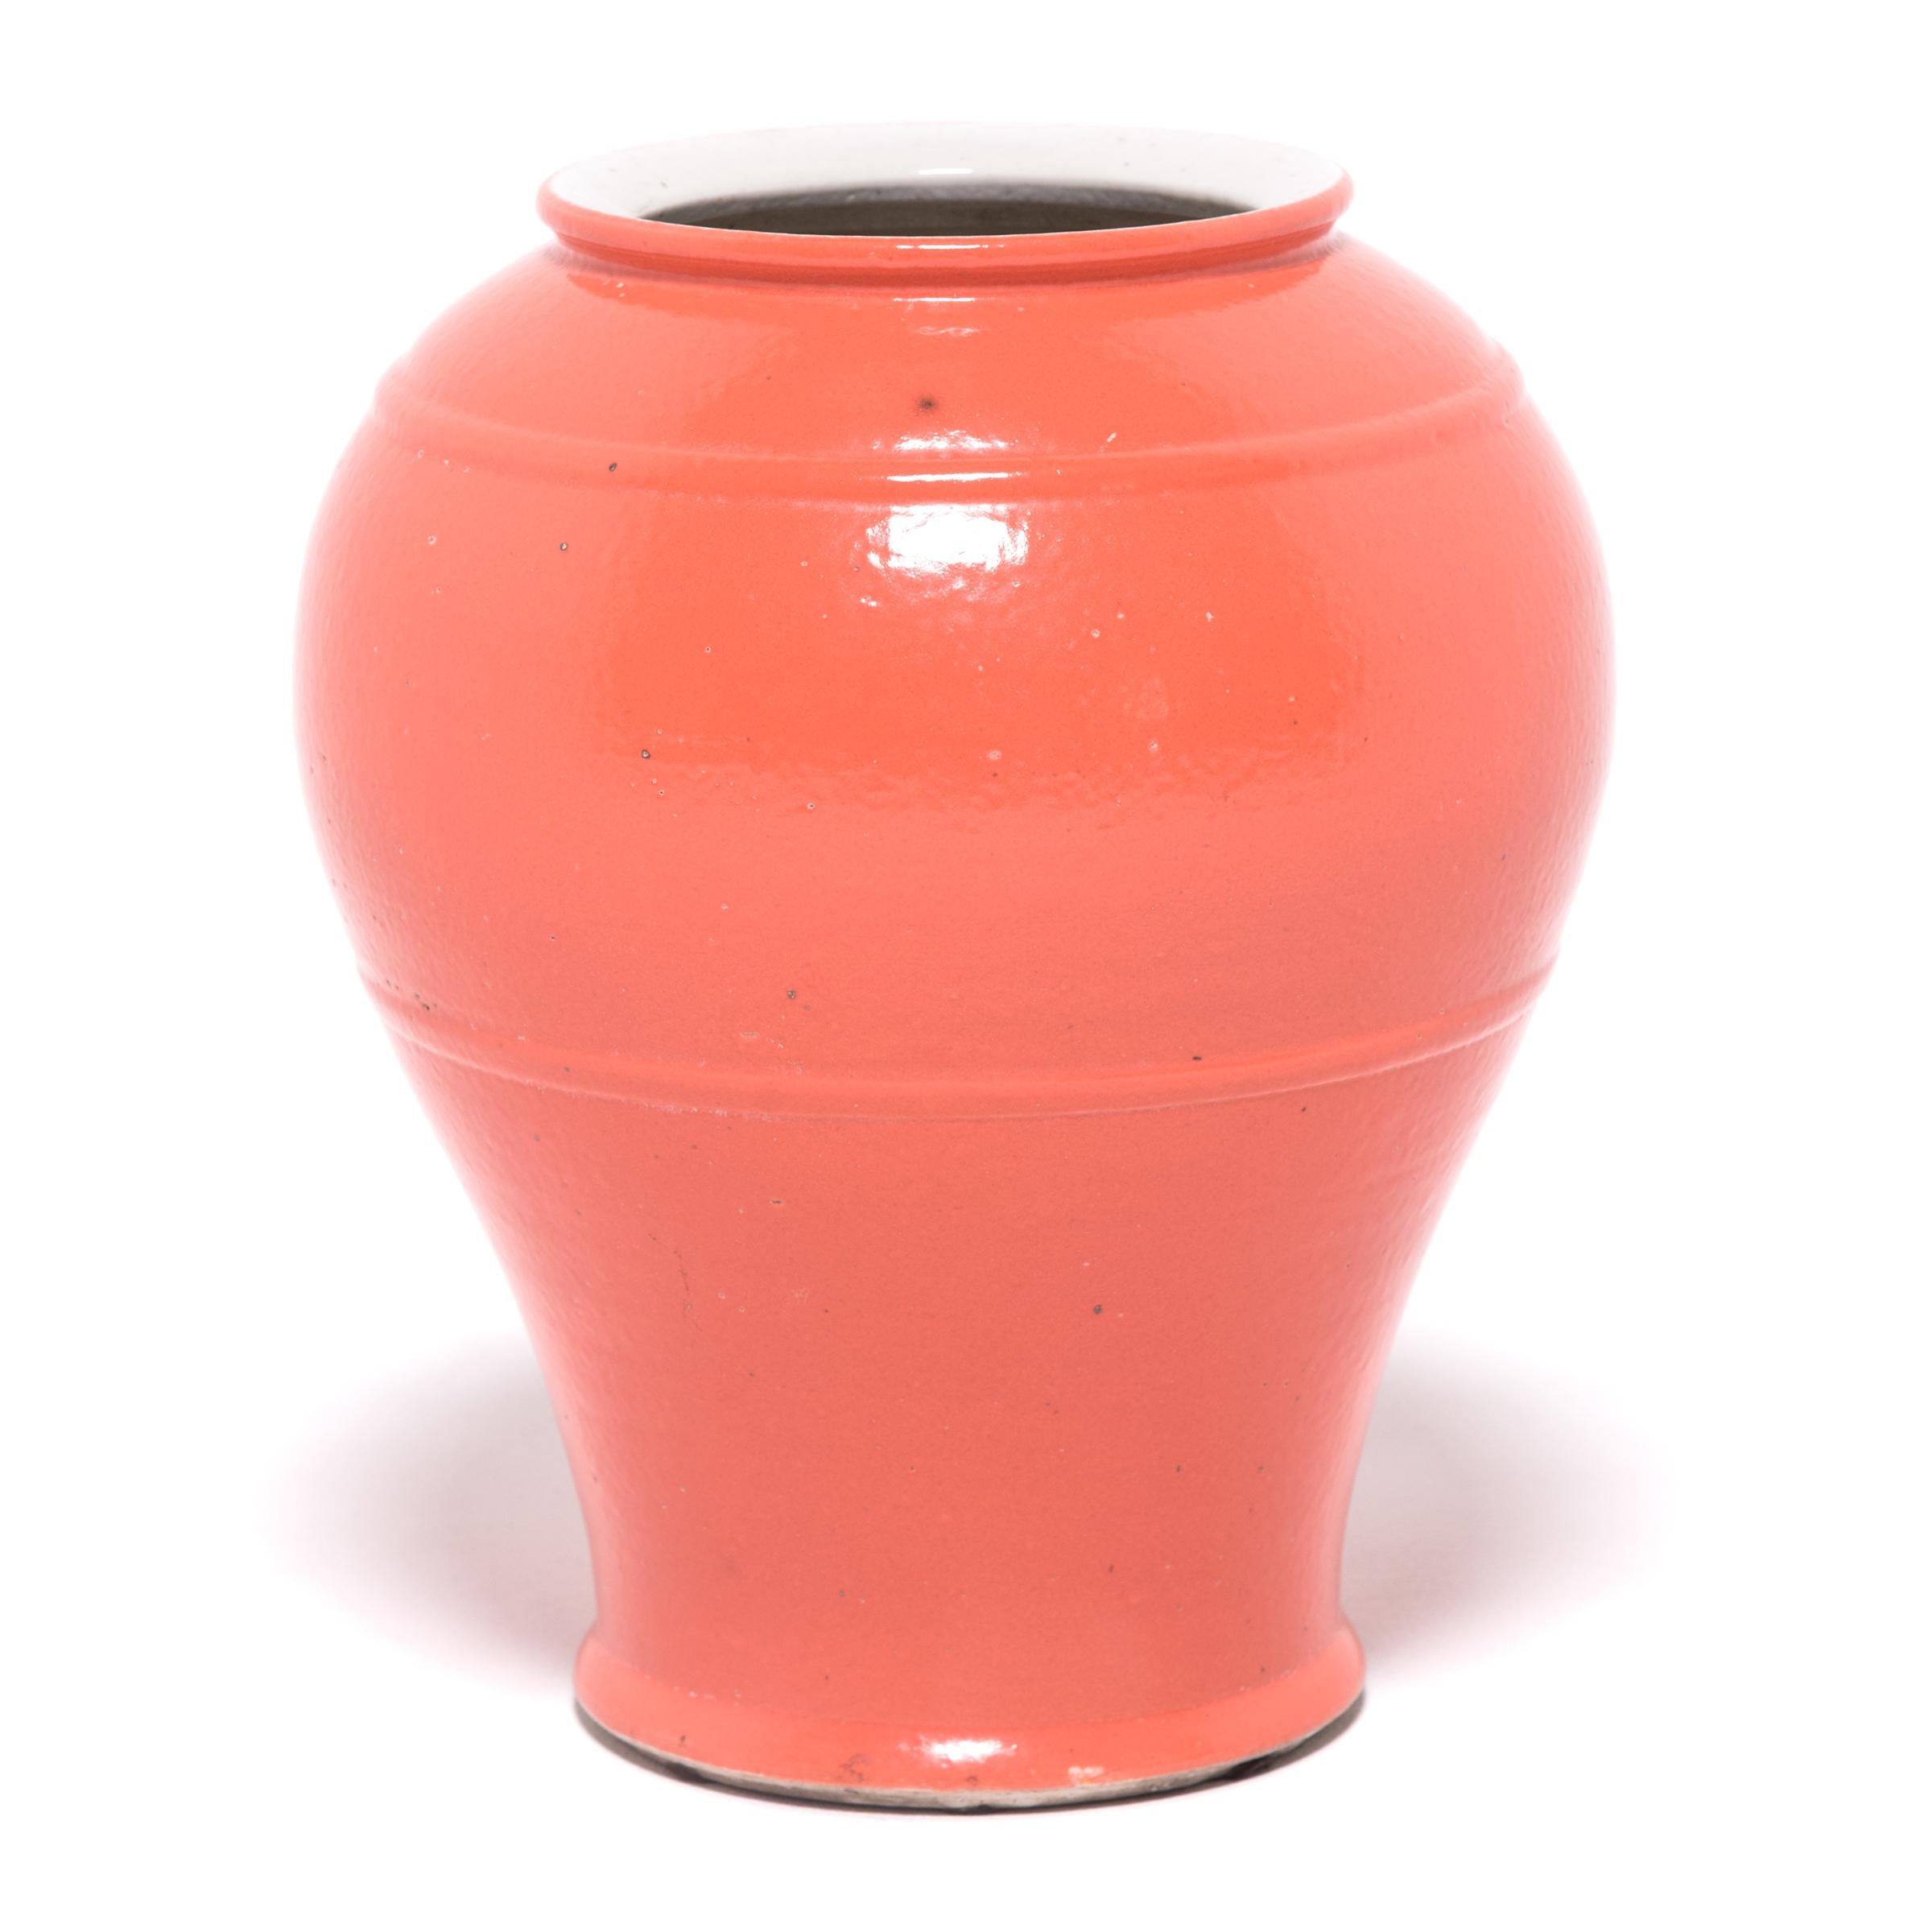 Ce grand vase conique réinterprète les courbes classiques des céramiques chinoises traditionnelles avec des lignes simplifiées et une glaçure orange kaki éclatante. Sculpté par des artisans de la province chinoise du Zhejiang, ce vase présente une